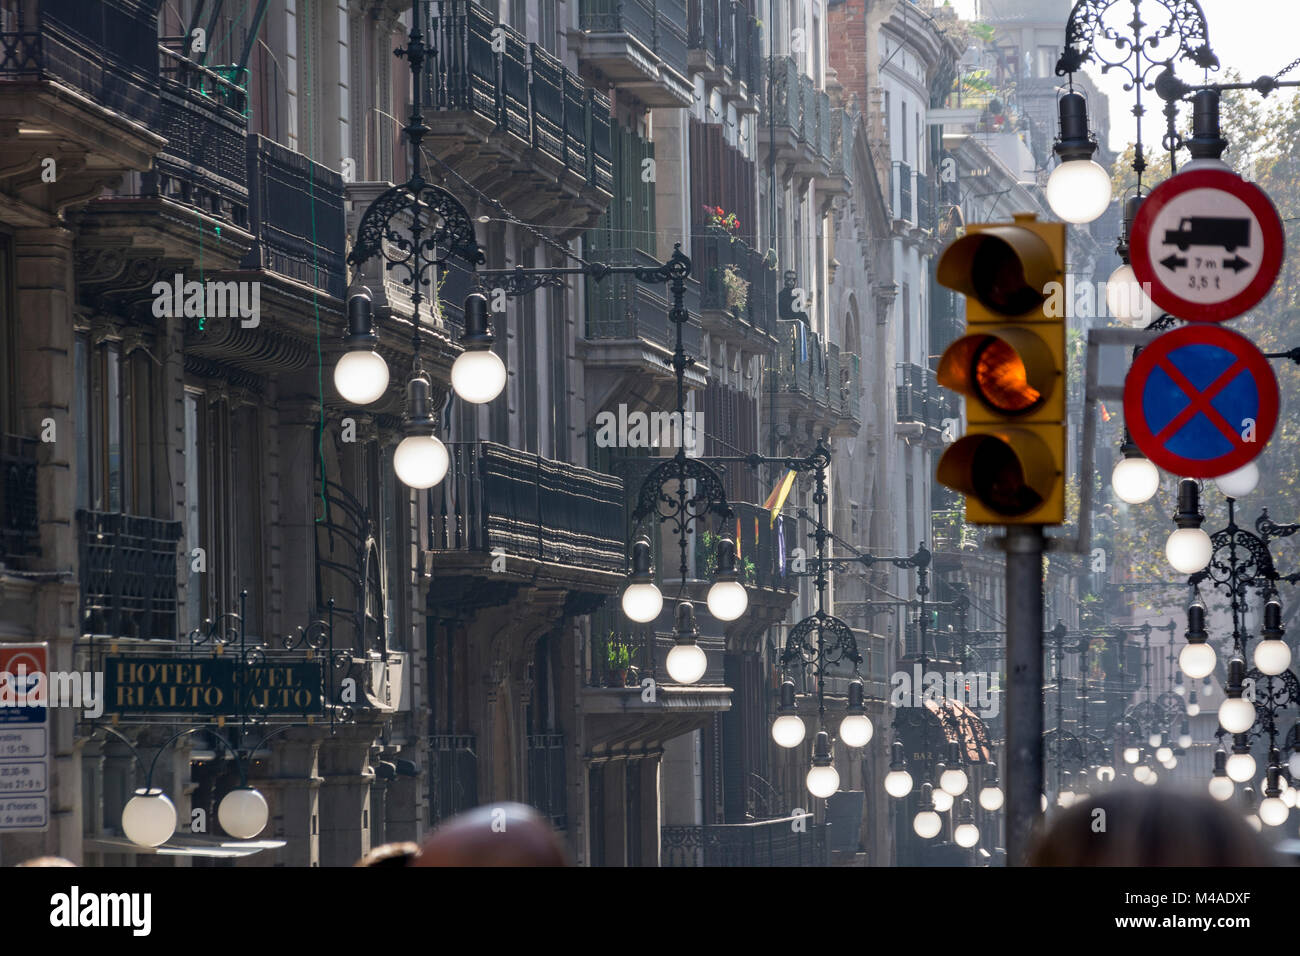 Straßenszene in Barcelona mit von der Sonne durchleuchteten Straßenlampen Stock Photo